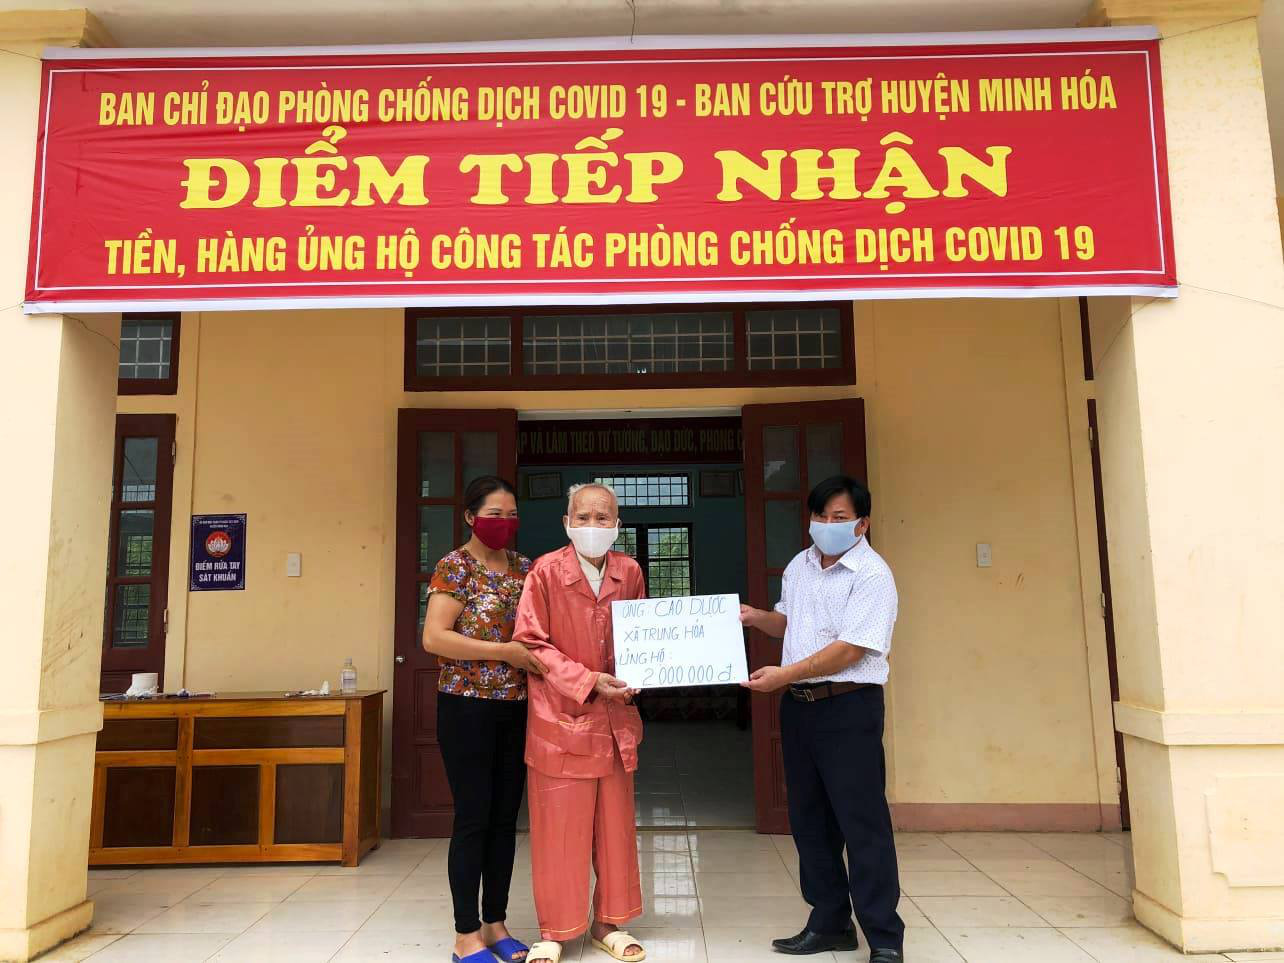 Xúc động hình ảnh cụ già 104 tuổi ở Quảng Bình ủng hộ 2 triệu đồng ...